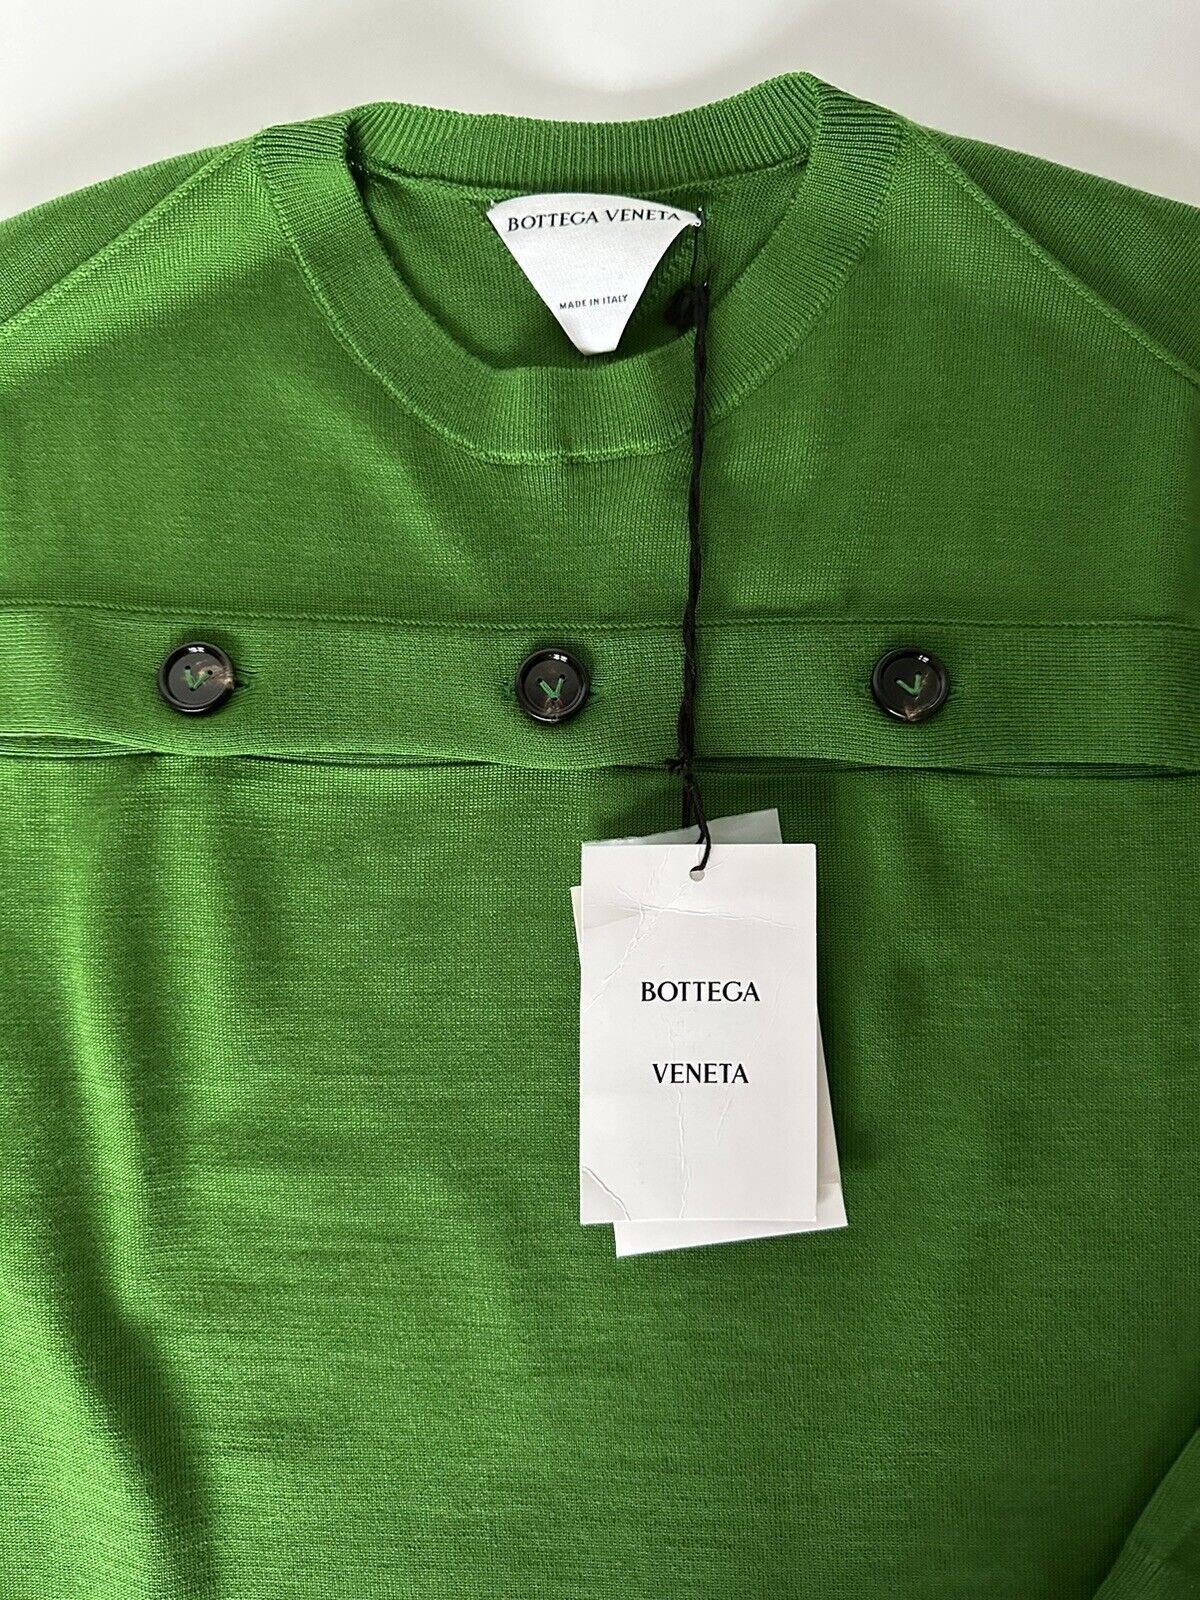 Neu mit Etikett: 1750 $ Bottega Veneta Damen-Strickoberteil aus grüner Wolle mit offenen Knöpfen Medium 648729